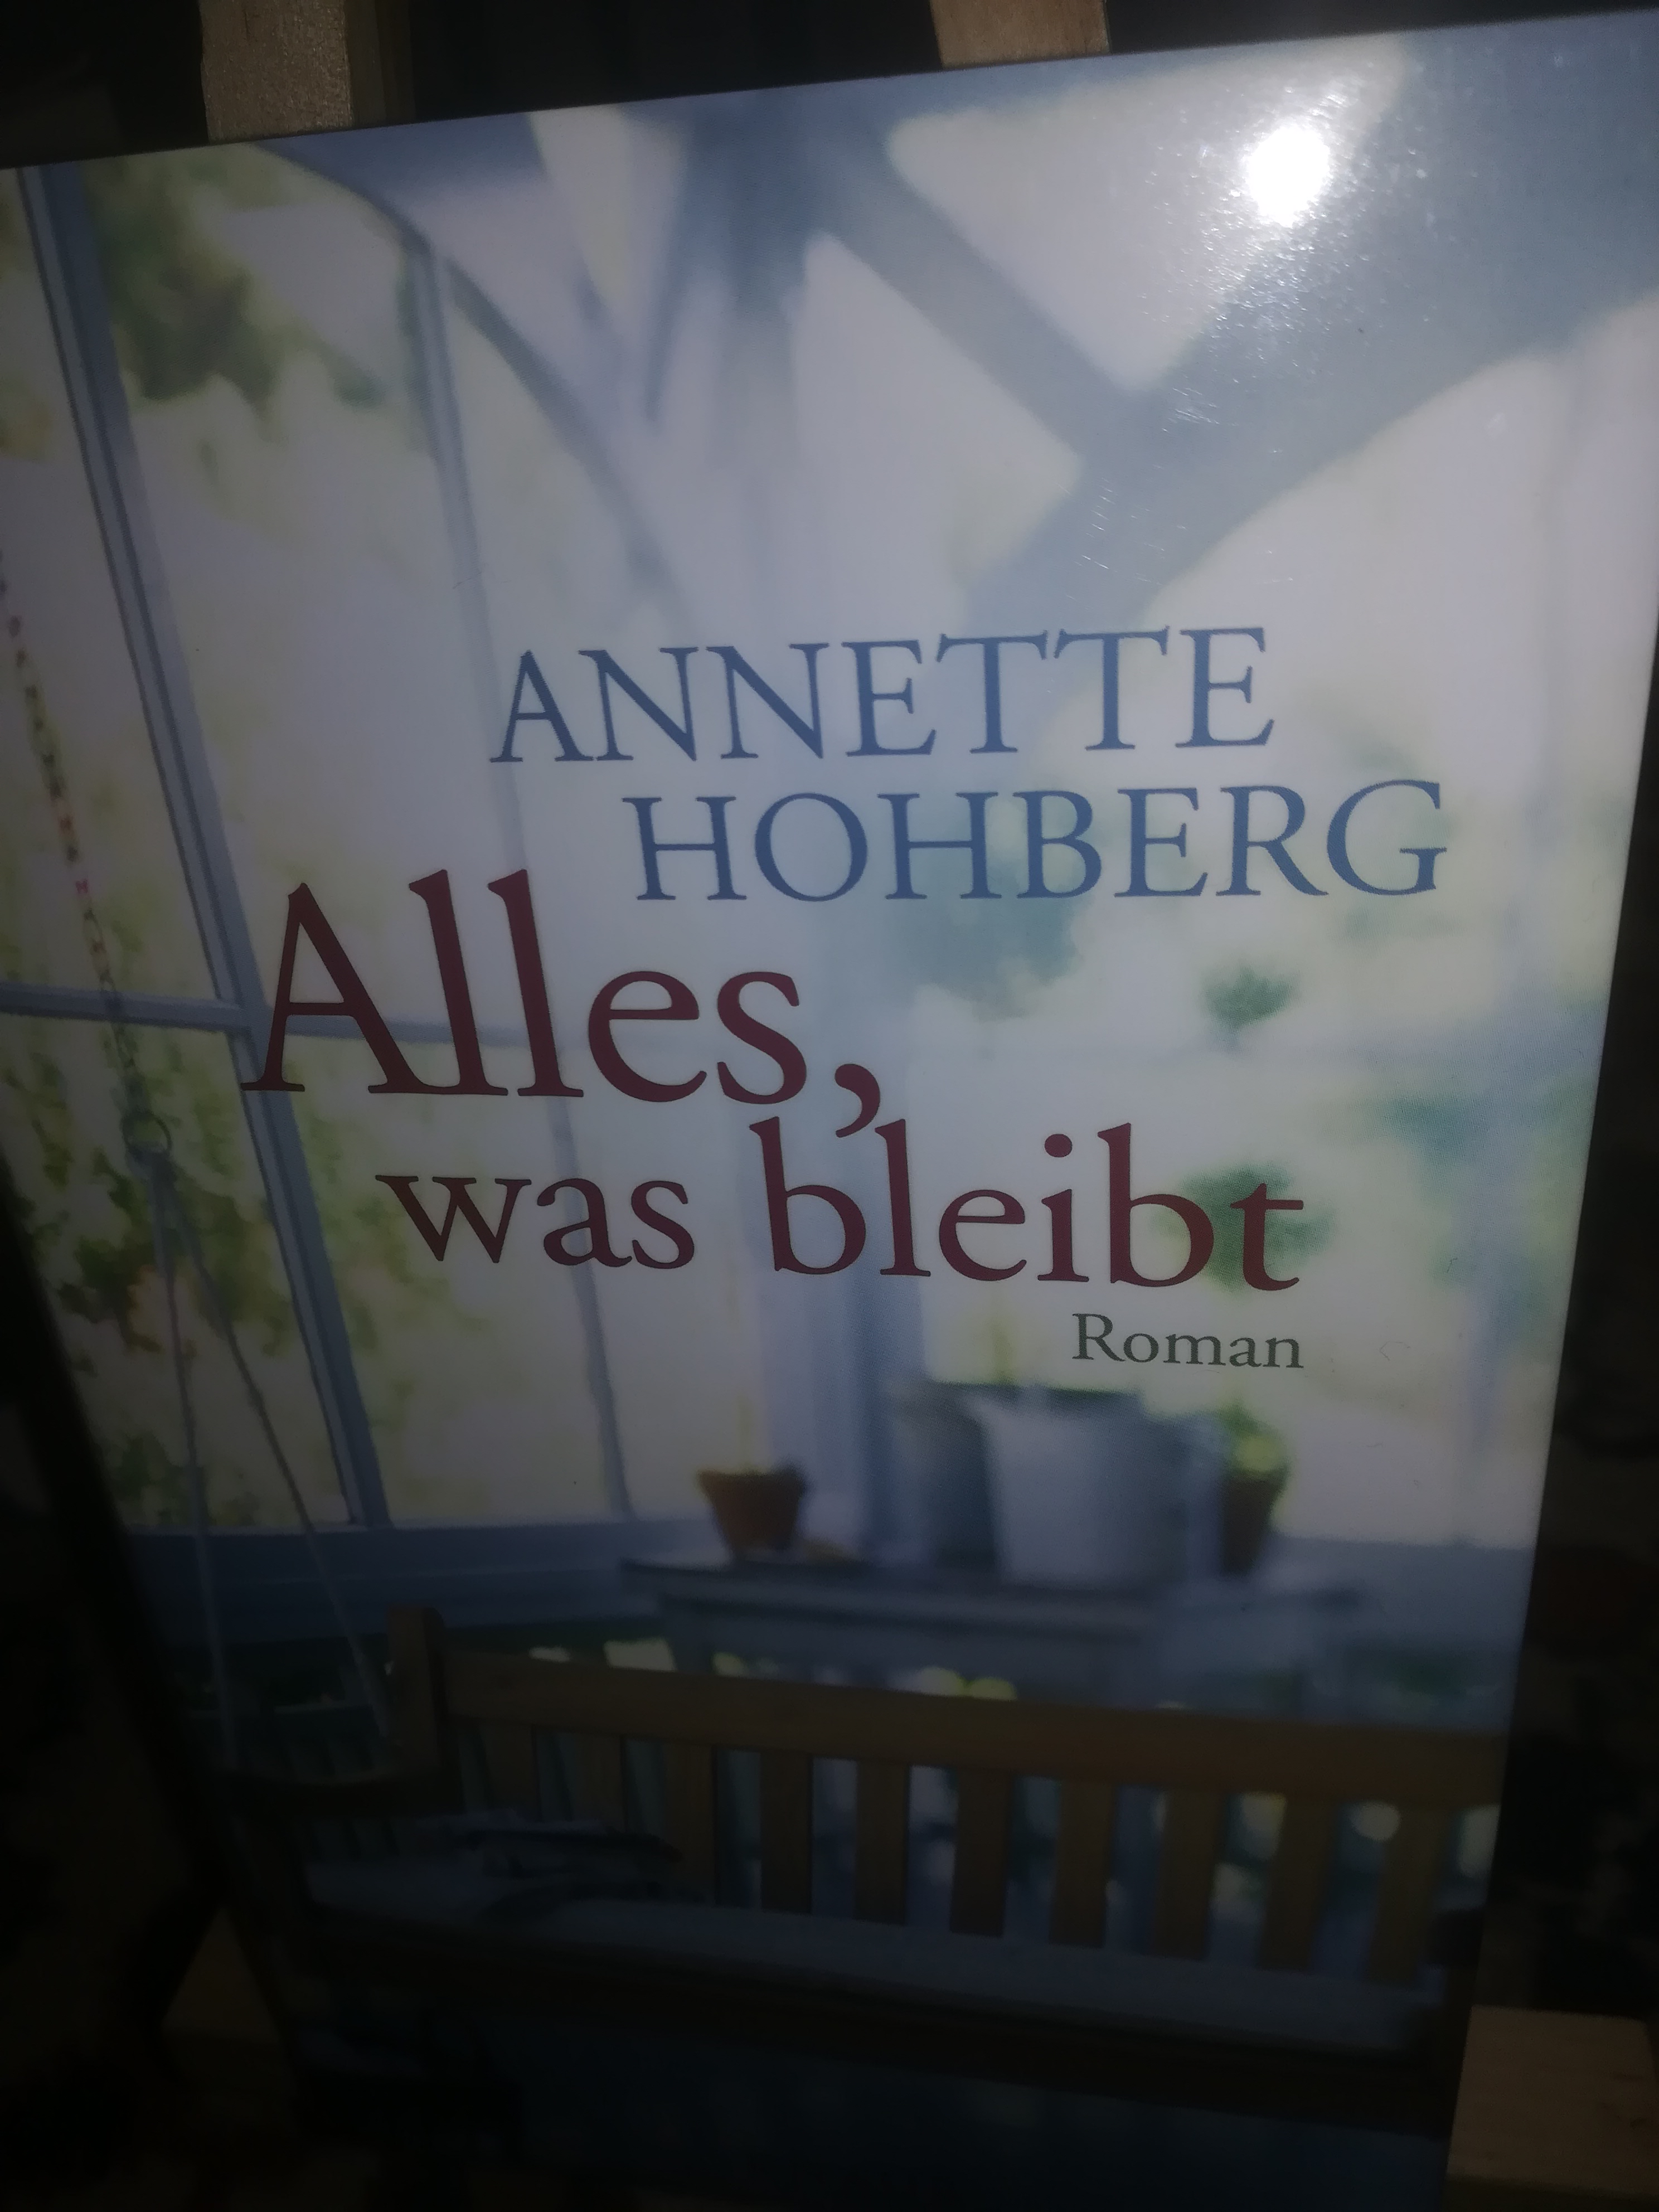 Alles was bleibt - Hohberg Annette